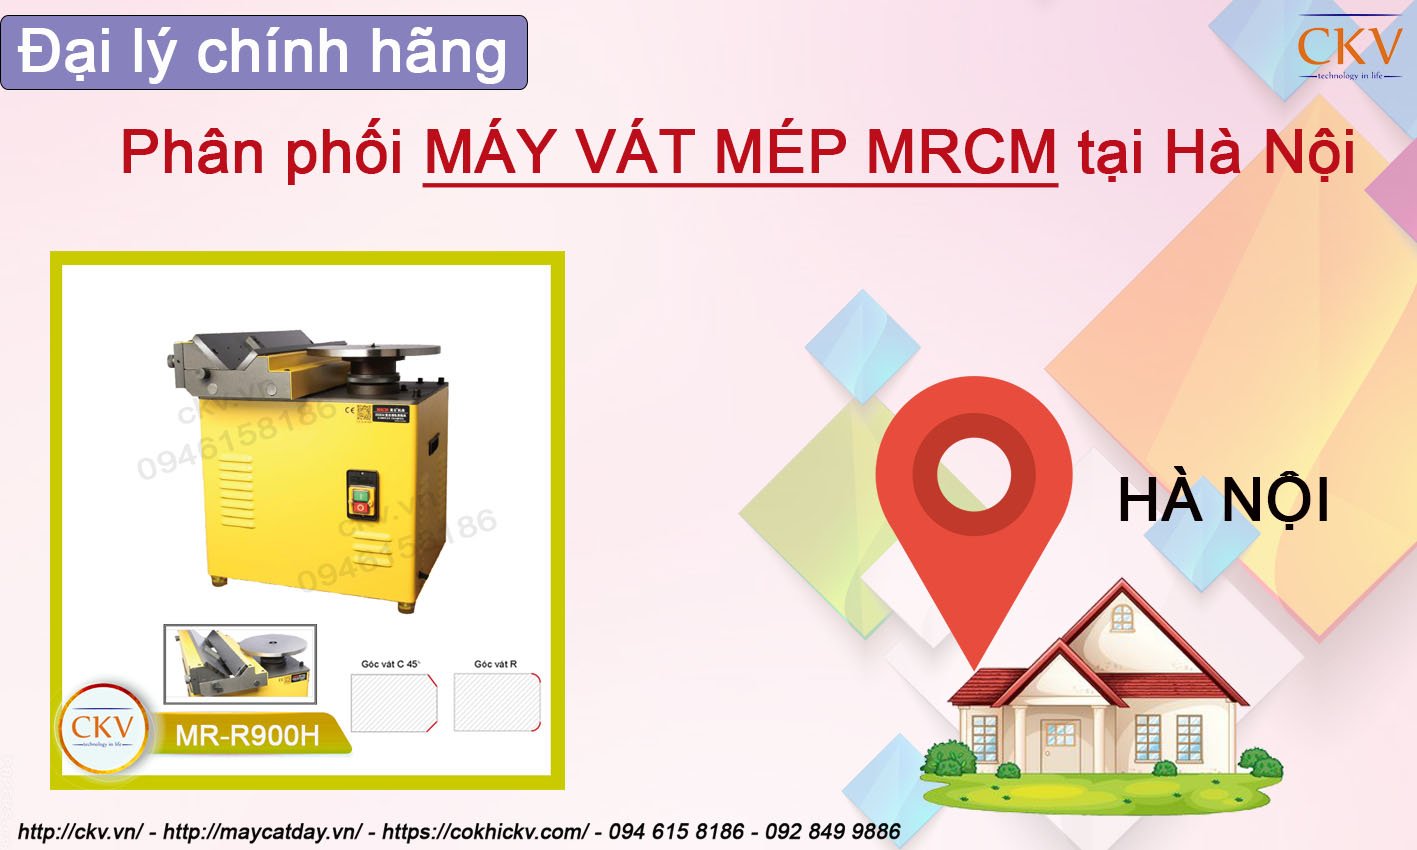 Phân phối máy vát mép MRCM tại Hà Nội